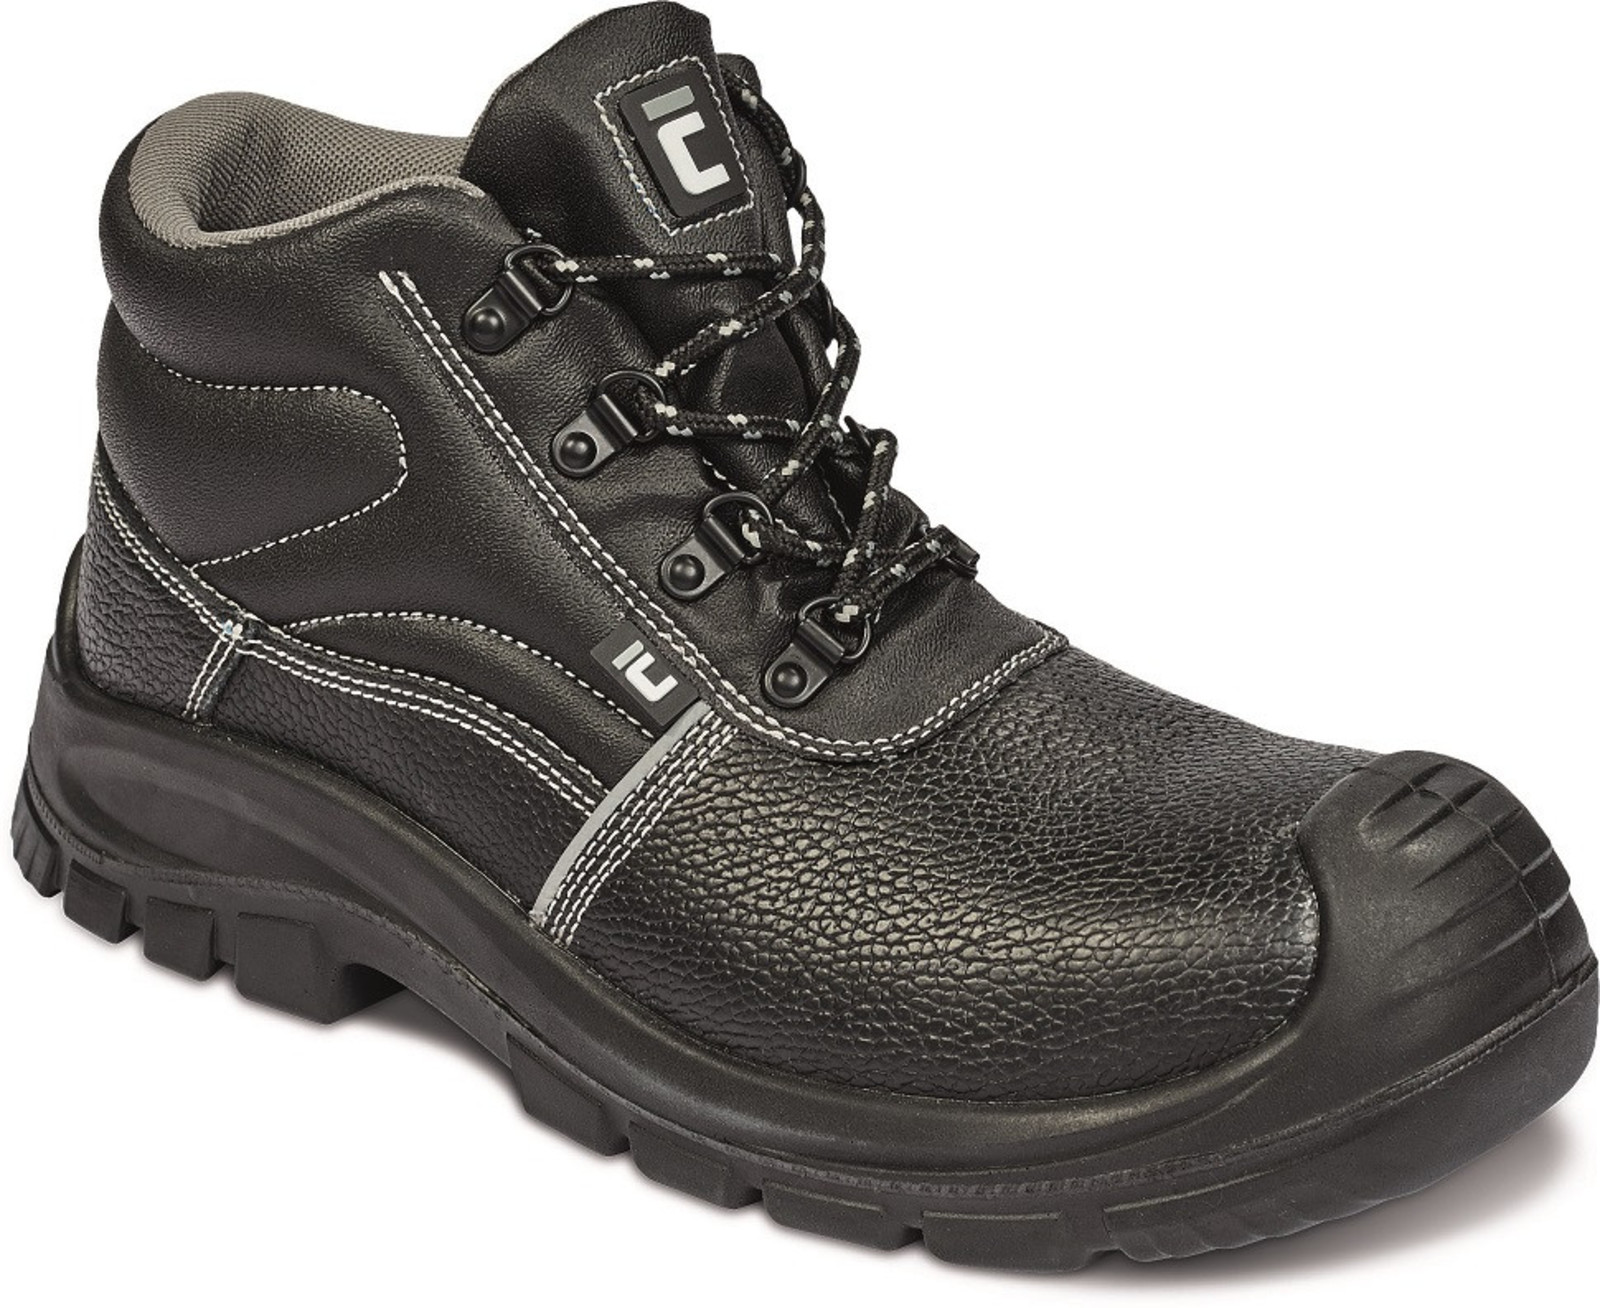 Bezpečnostná obuv Raven XT S3 Metal Free - veľkosť: 39, farba: čierna